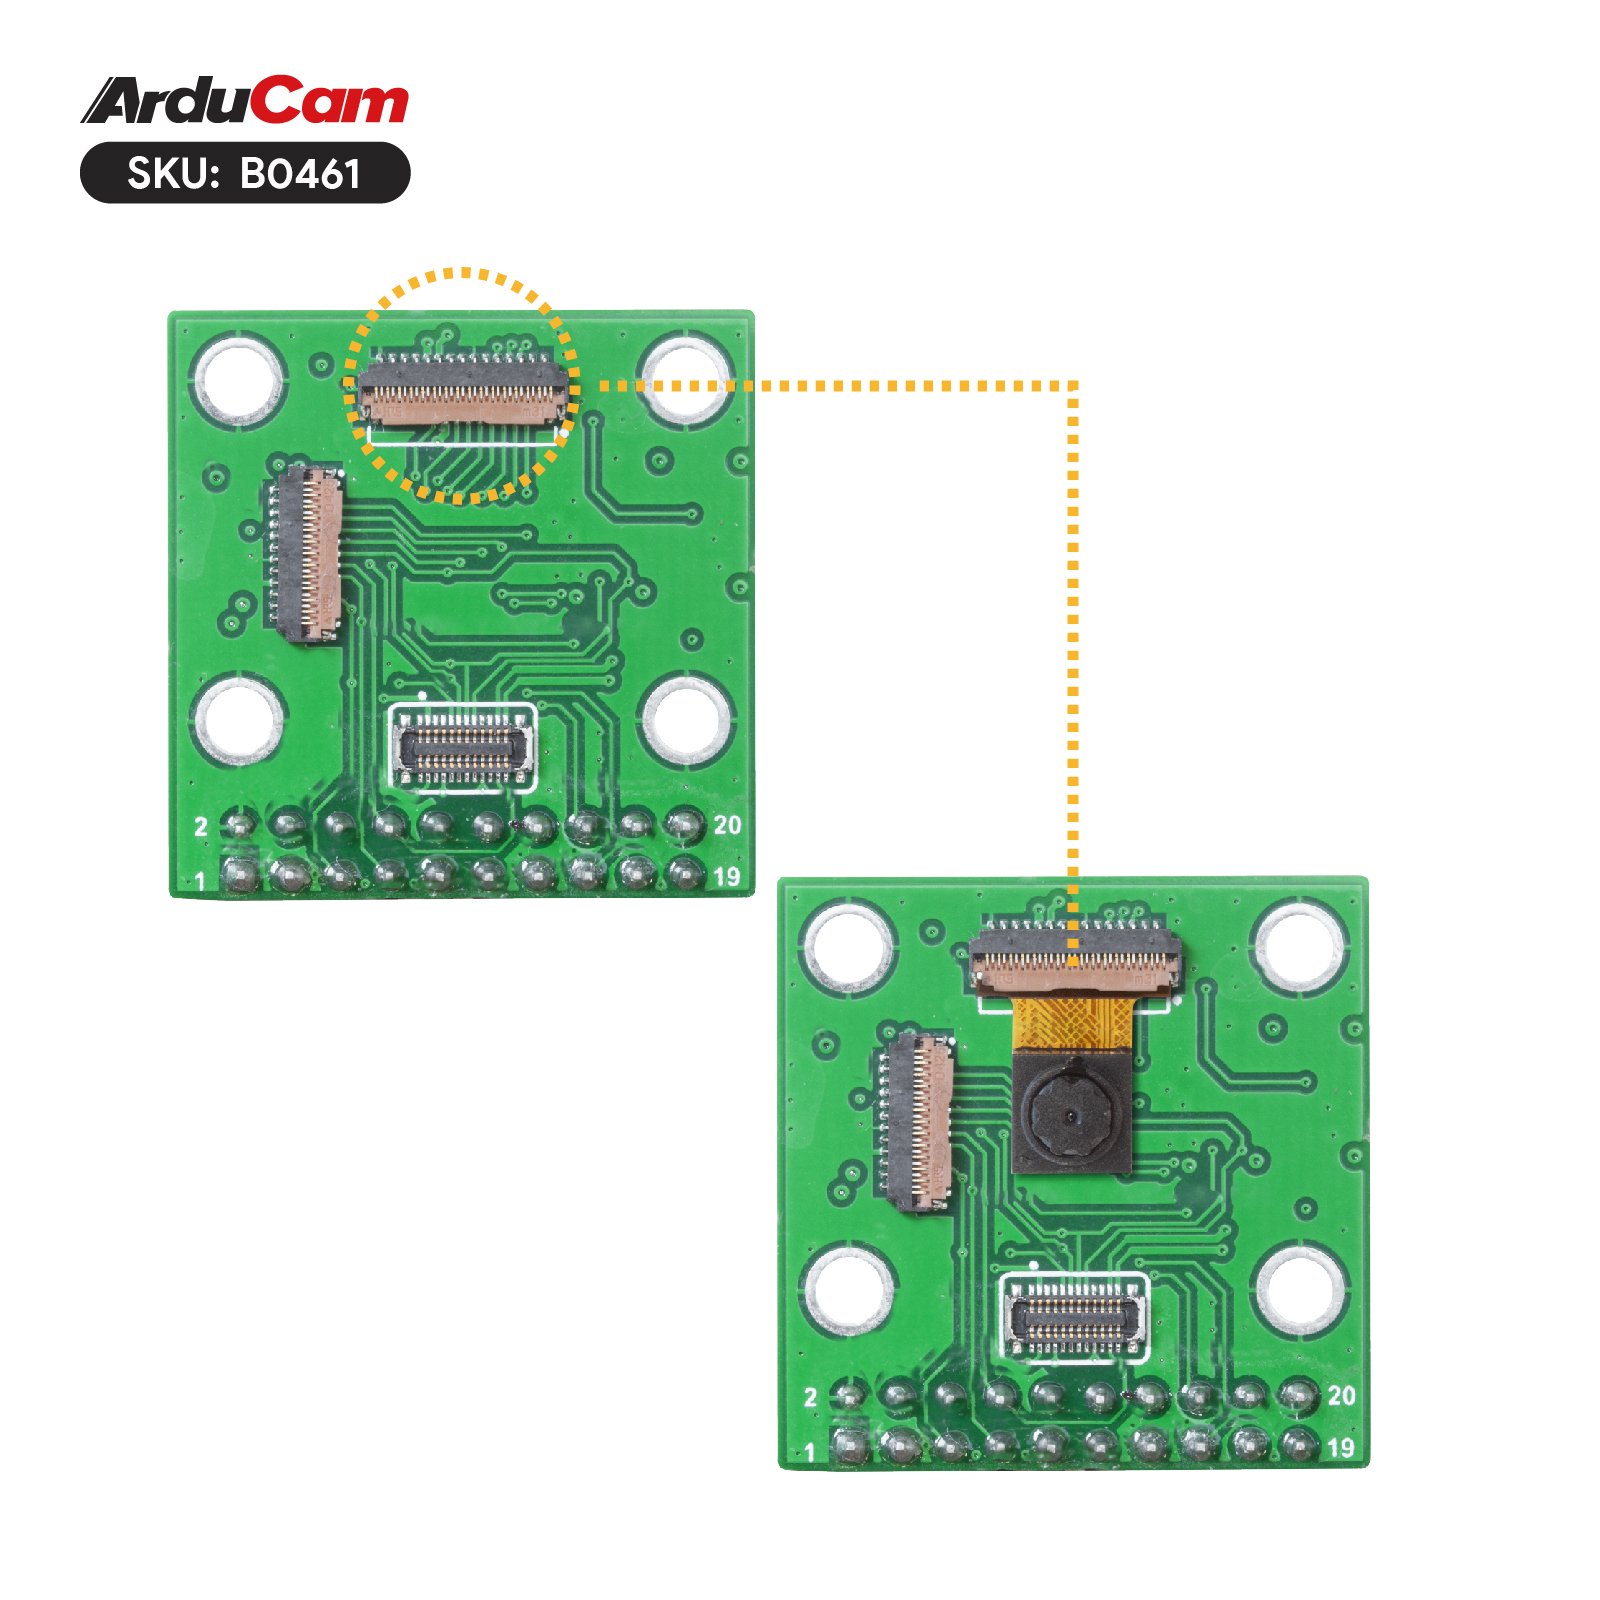 HM0360 VGA Monochrome DVP Camera Module for Arduino GIGA R1 WIFI Board -  Arducam